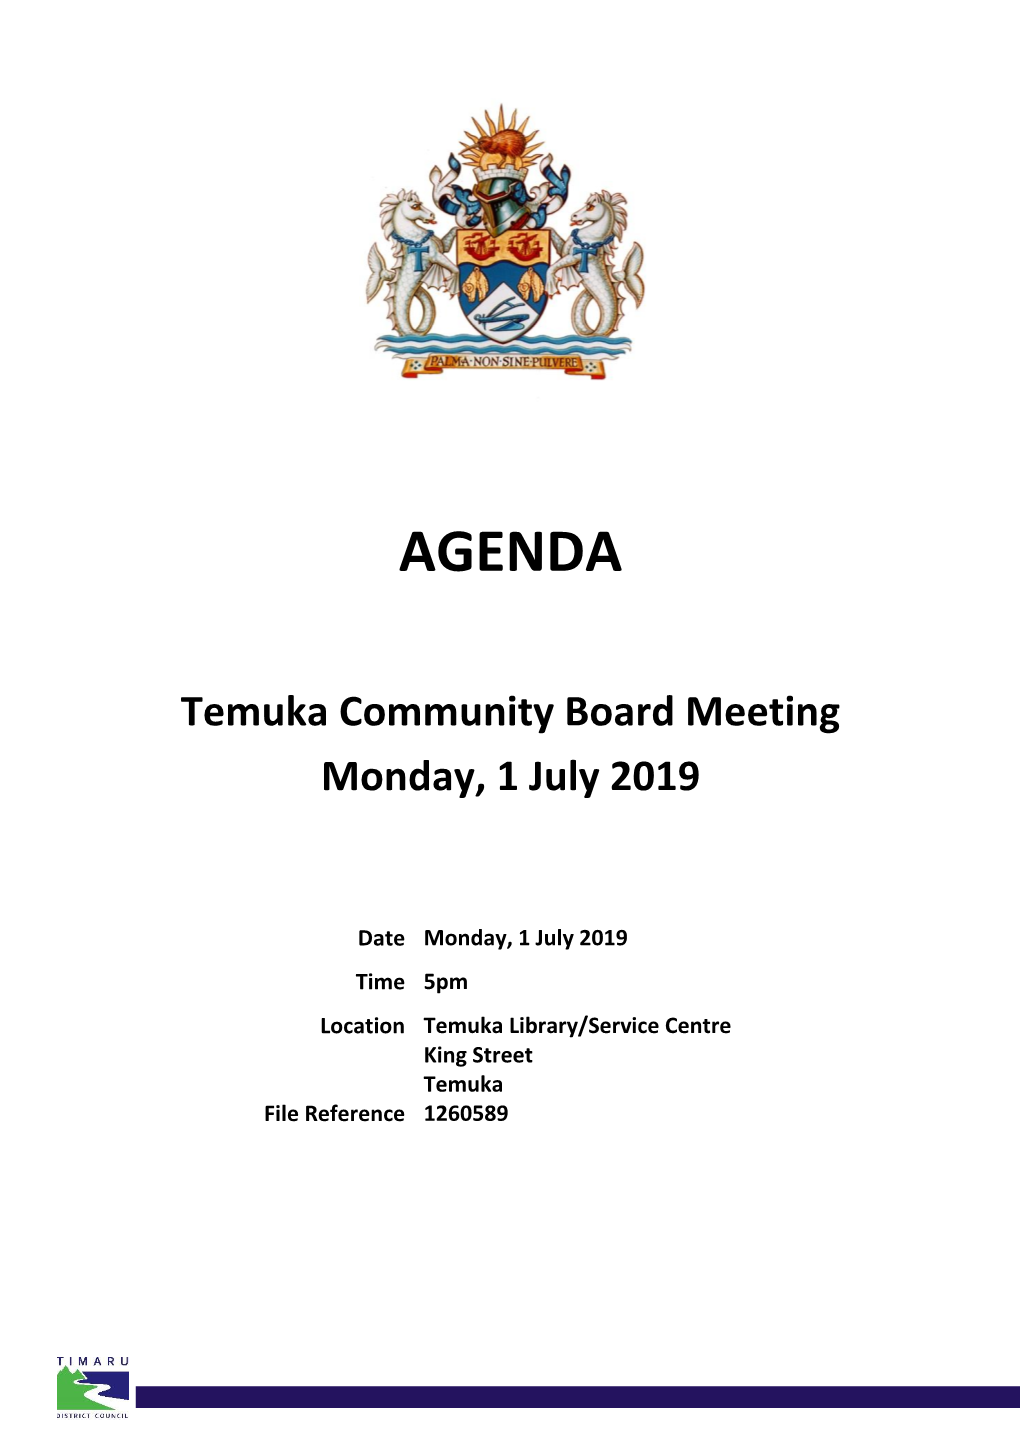 Agenda of Temuka Community Board Meeting